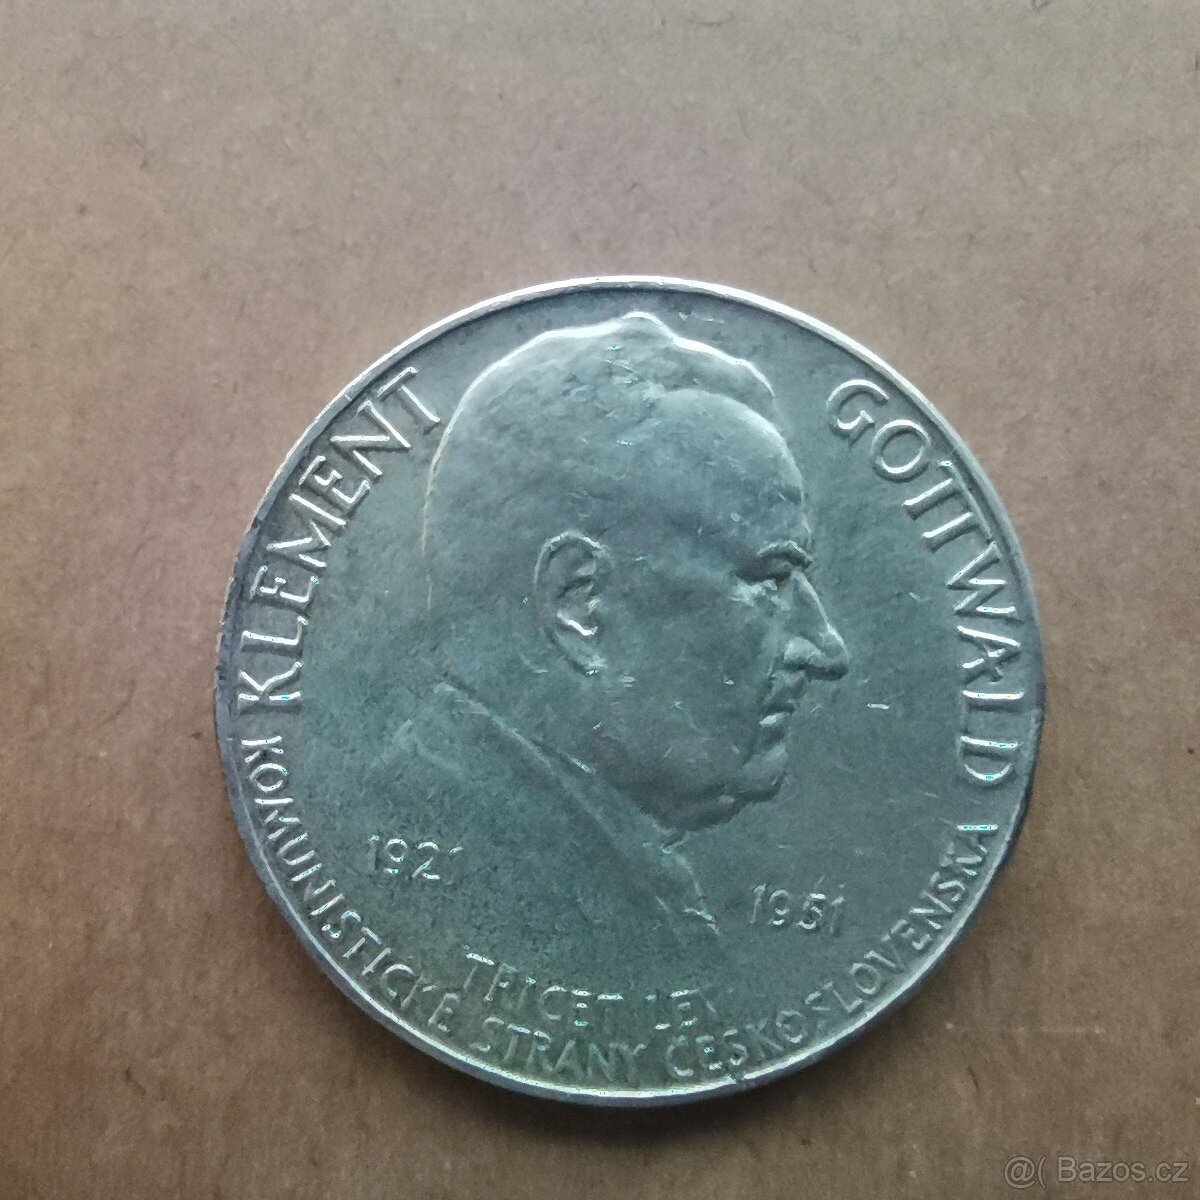 Stříbrná pamětní mince 100 kčs 1951 - Klement Gottwald